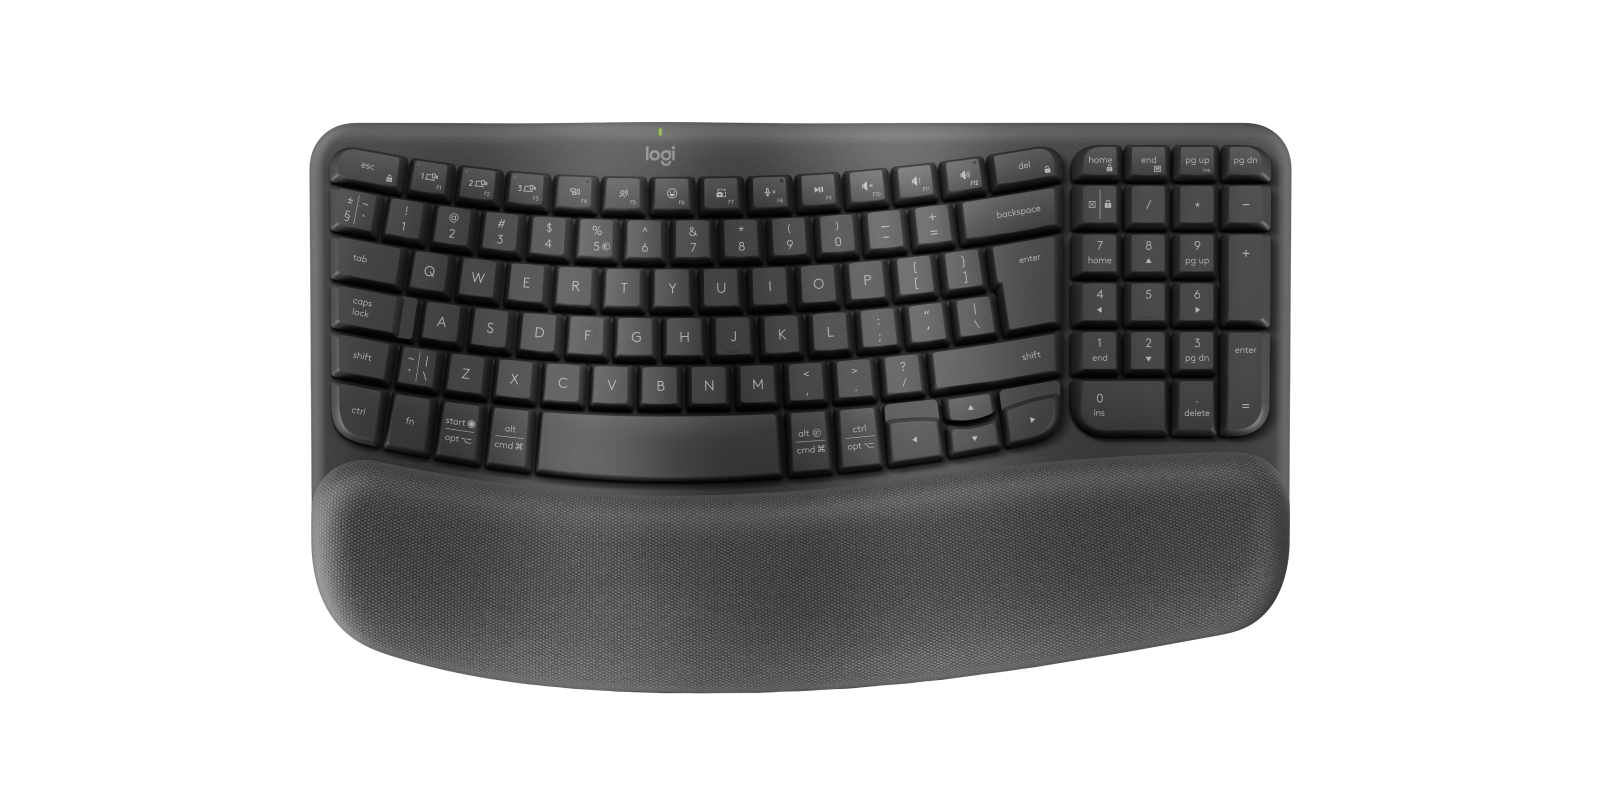 Wave Keys - clavier ergonomique sans fil - avec repose poignets rembourré  (920-012328)